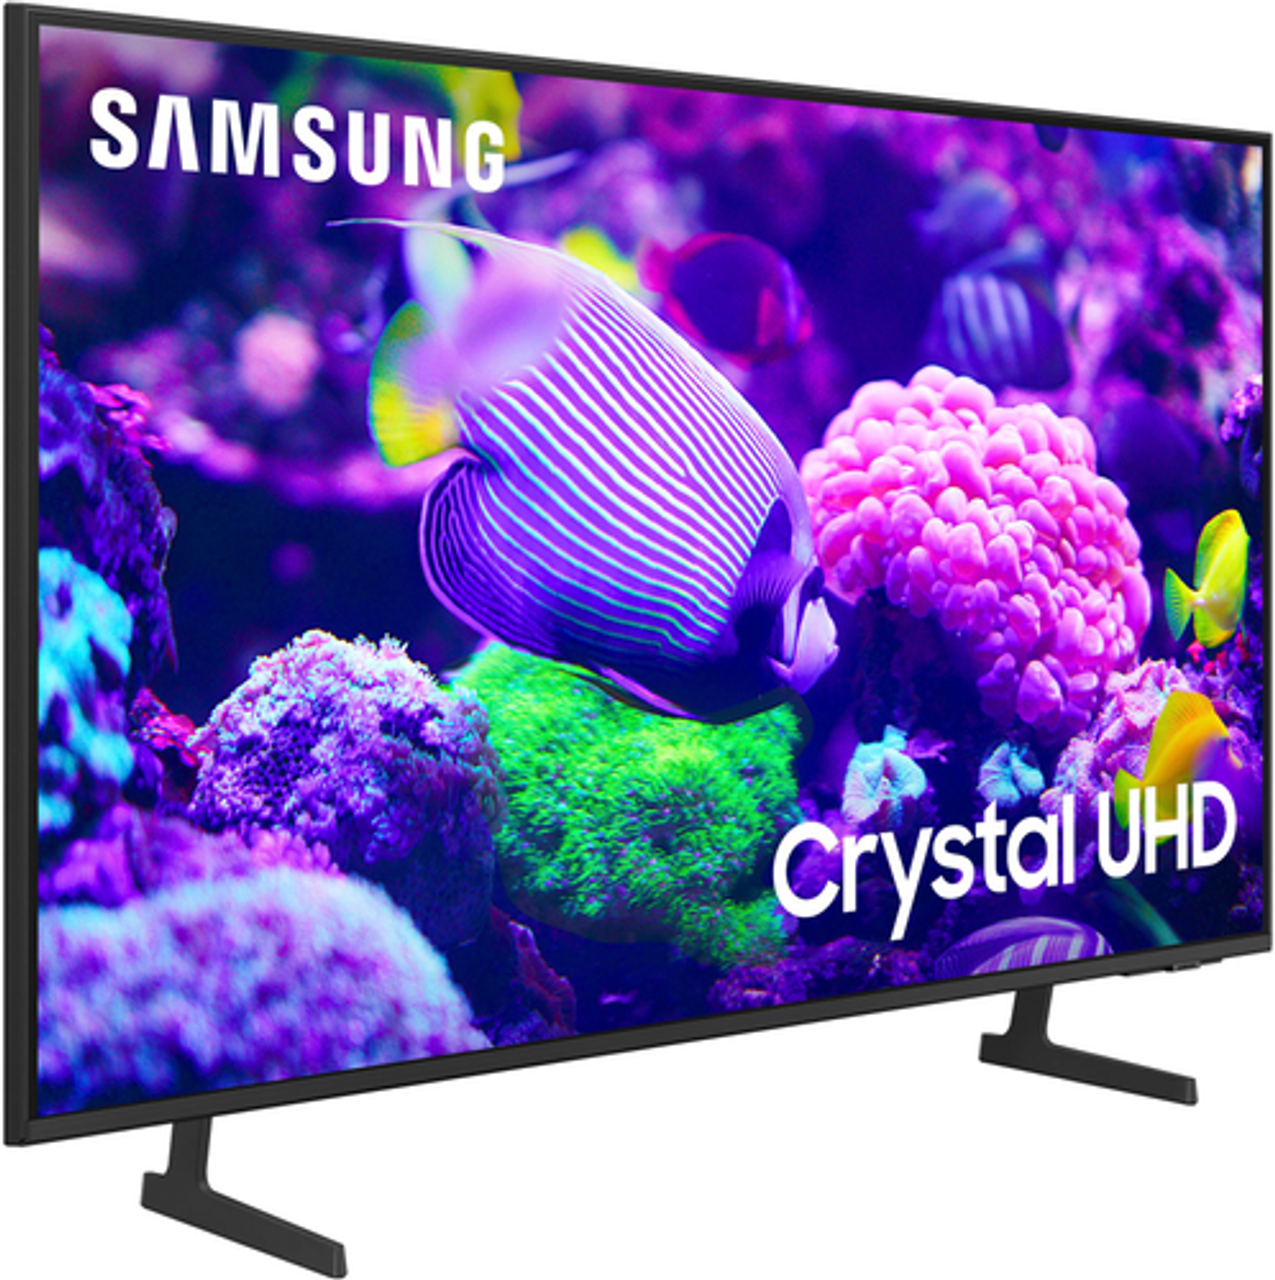 Samsung - 55” Class DU7200 Series Crystal UHD 4K Smart Tizen TV